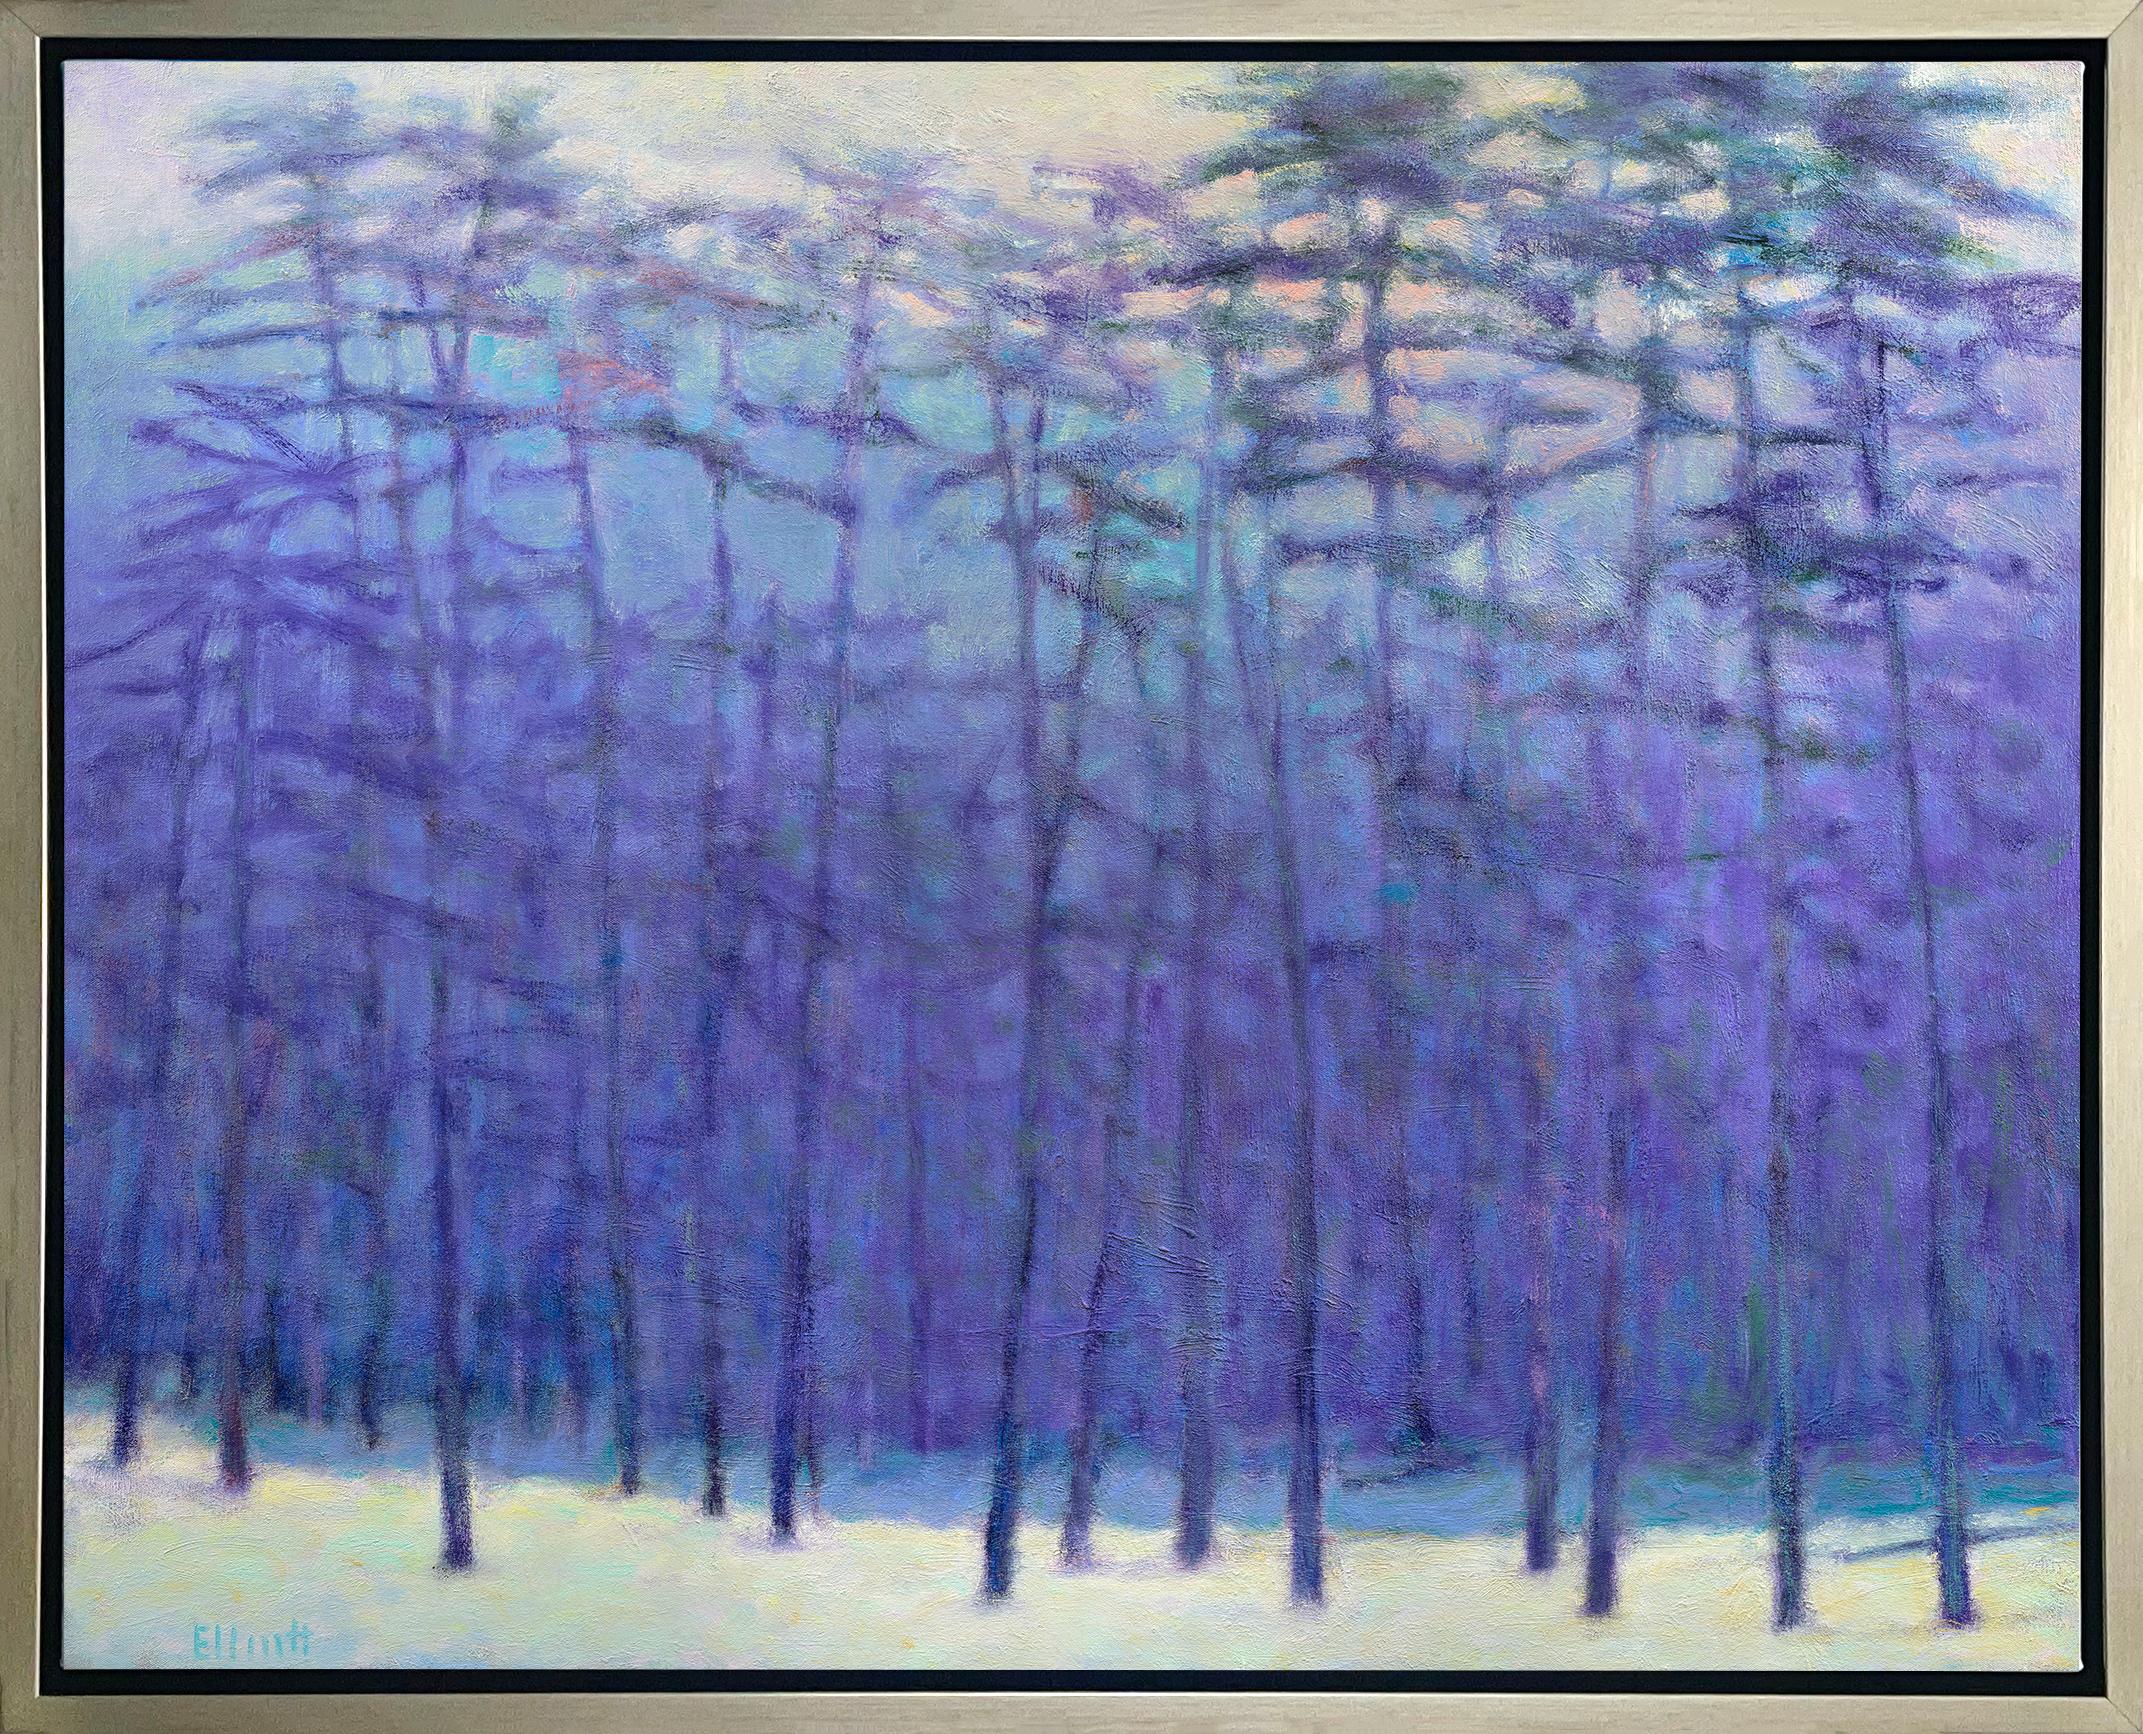 Abstract Print Ken Elliott - "Giclée dans la forêt" encadrée, édition limitée, 40" x 50".